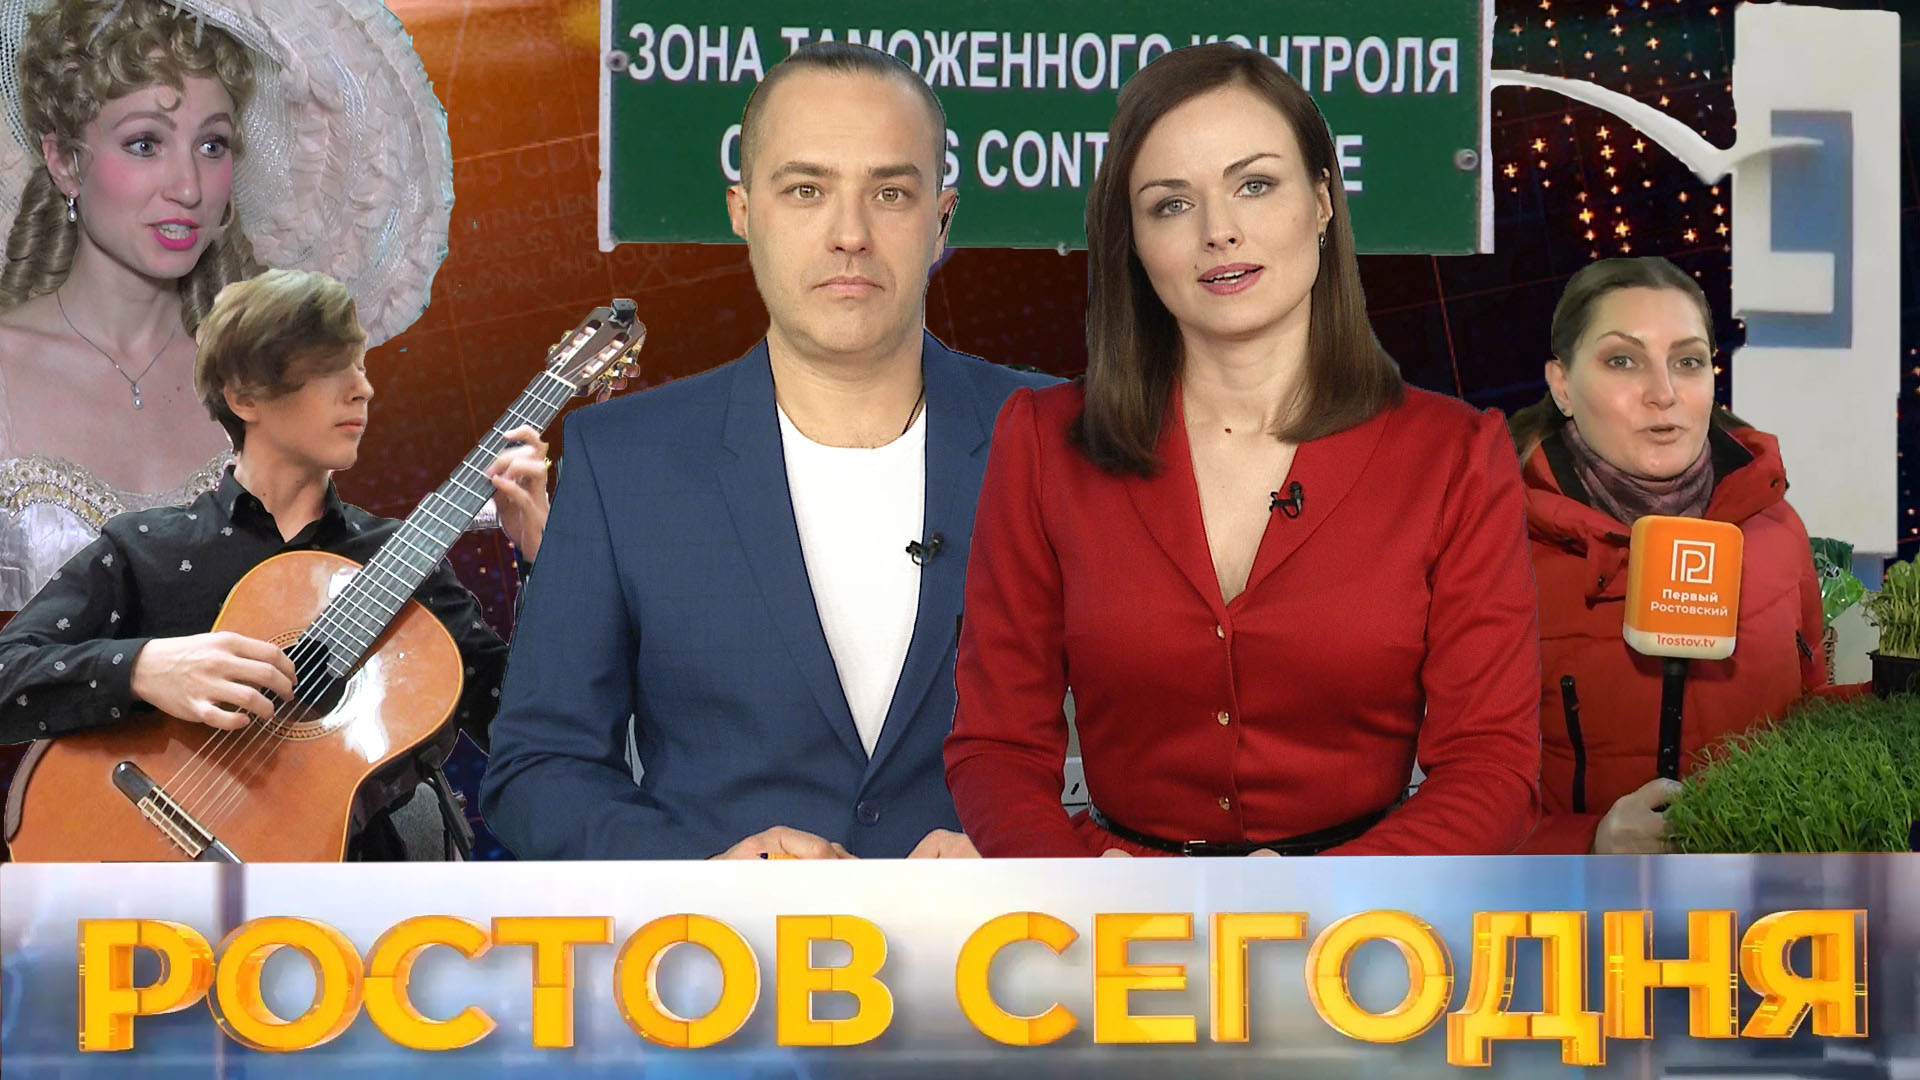 Ростов сегодня: вечерний выпуск. 27 января 2021